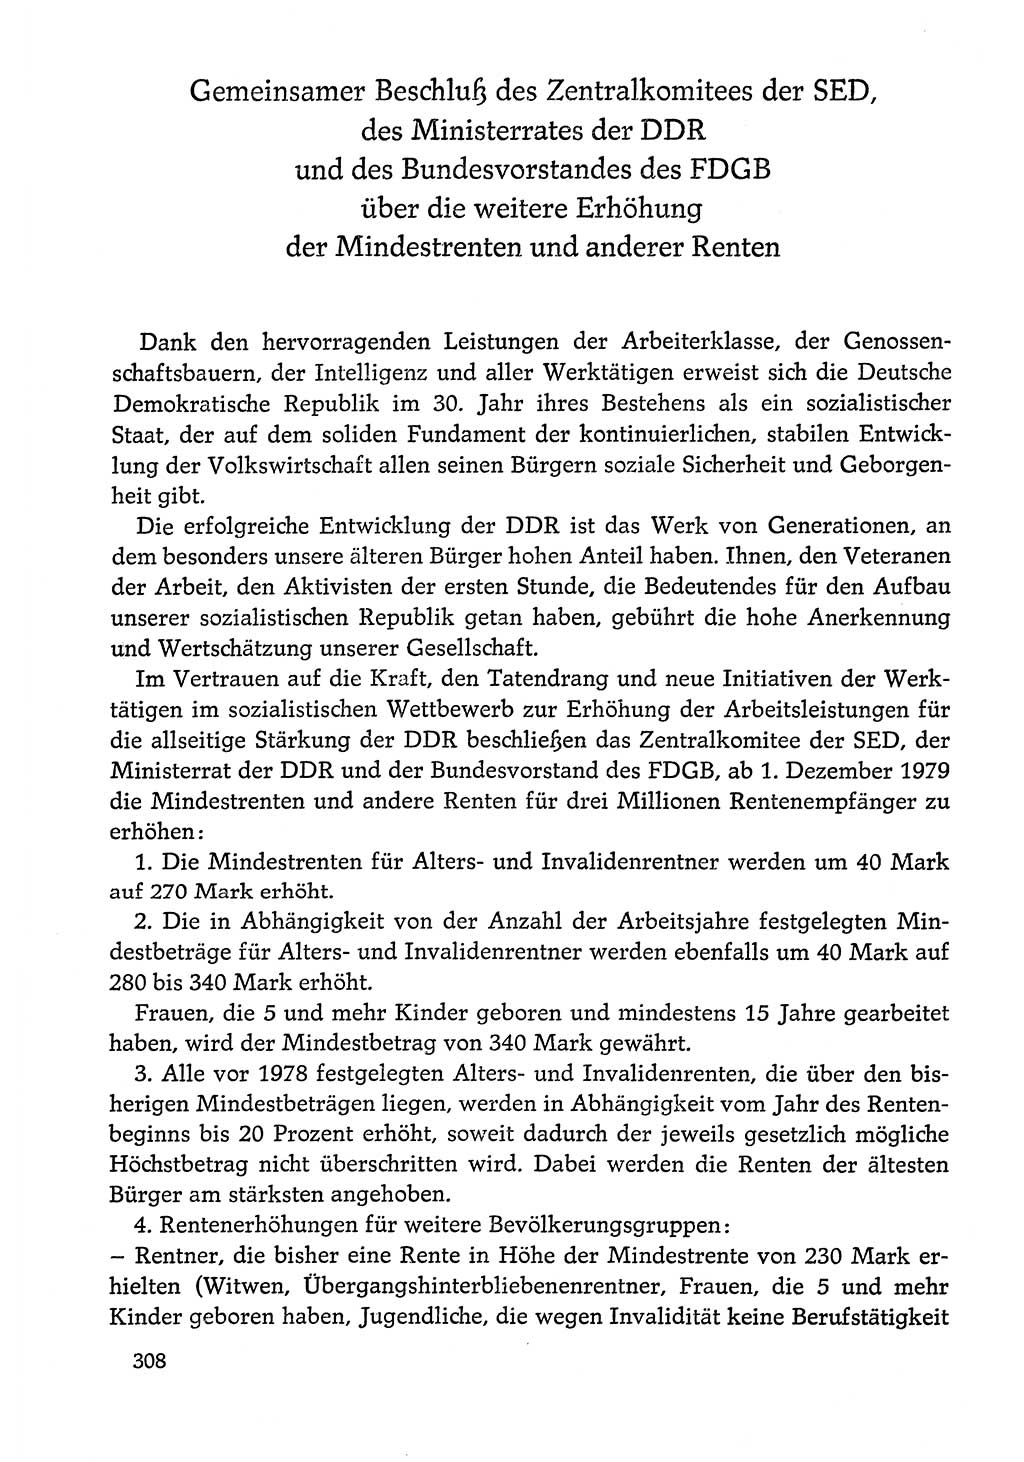 Dokumente der Sozialistischen Einheitspartei Deutschlands (SED) [Deutsche Demokratische Republik (DDR)] 1978-1979, Seite 308 (Dok. SED DDR 1978-1979, S. 308)